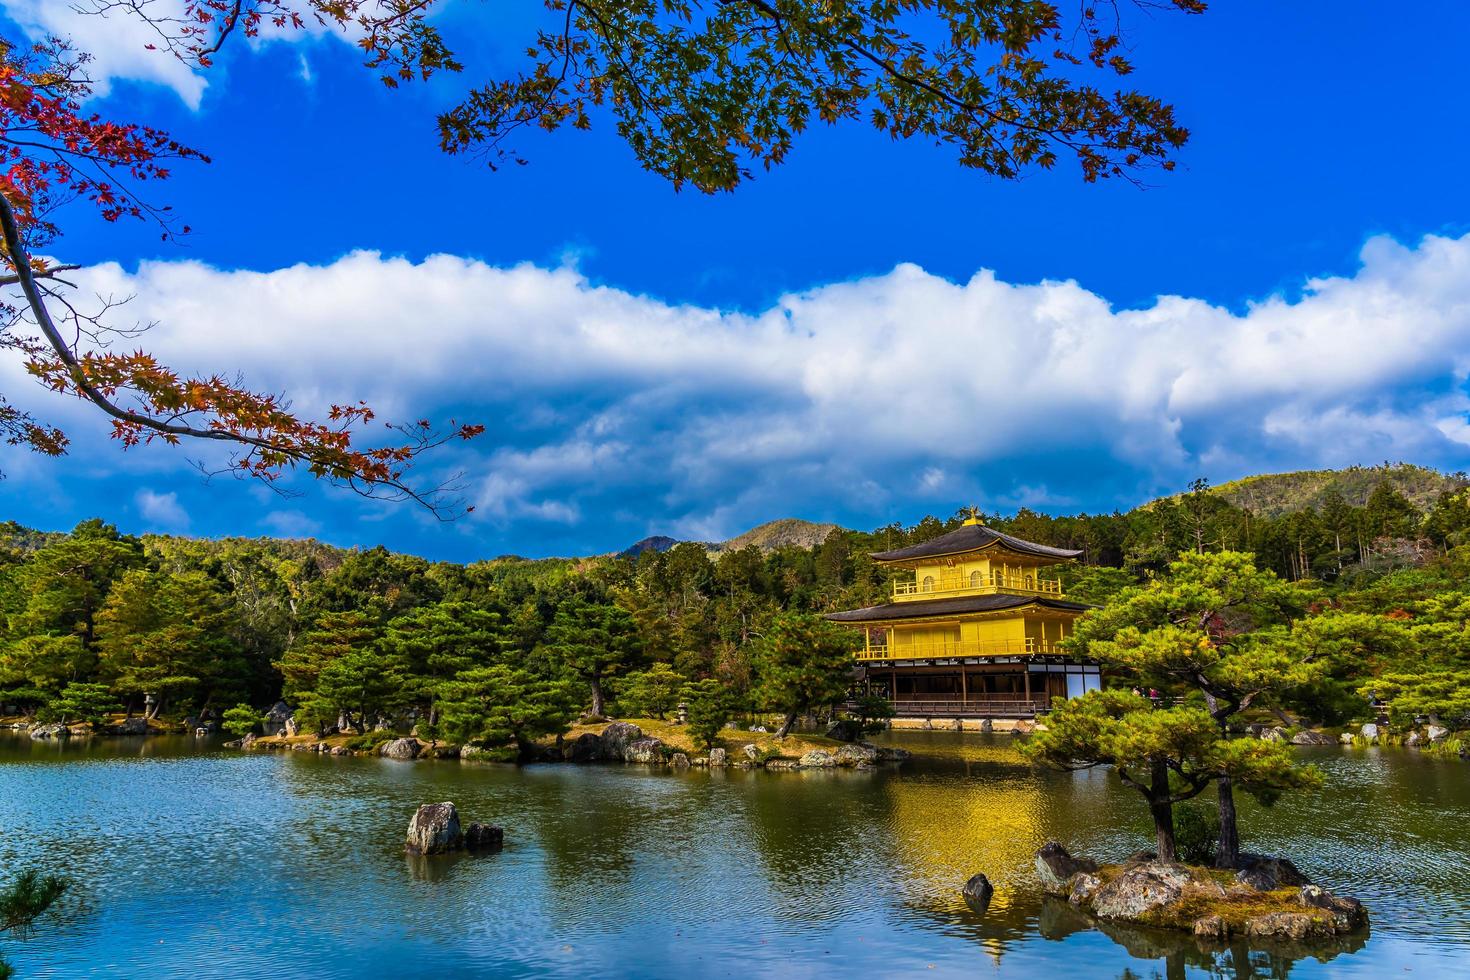 tempio kinkakuji o padiglione d'oro a kyoto, giappone foto